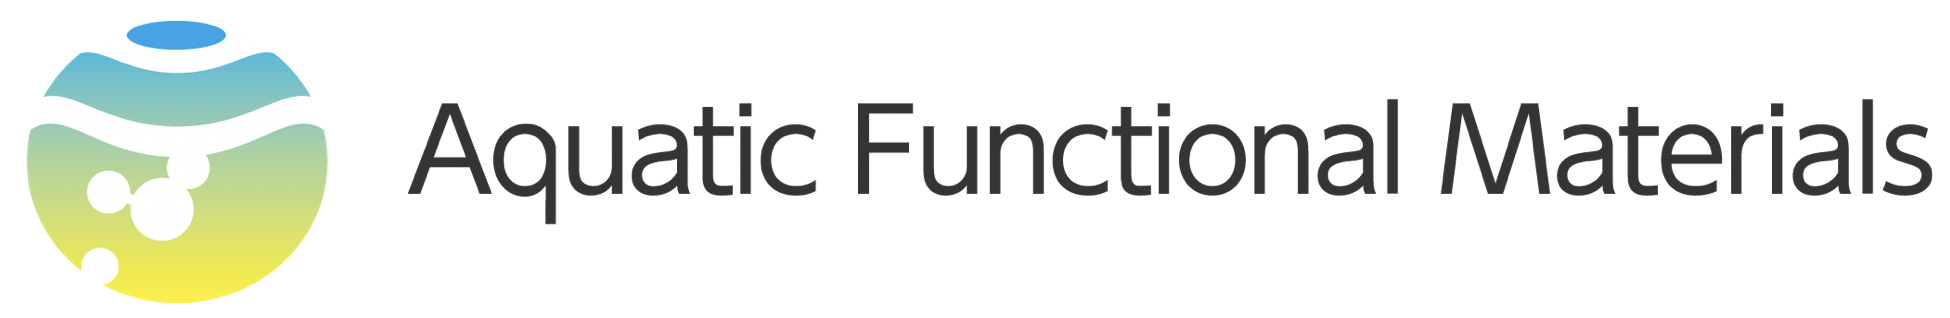 aquatic functional materials_logo